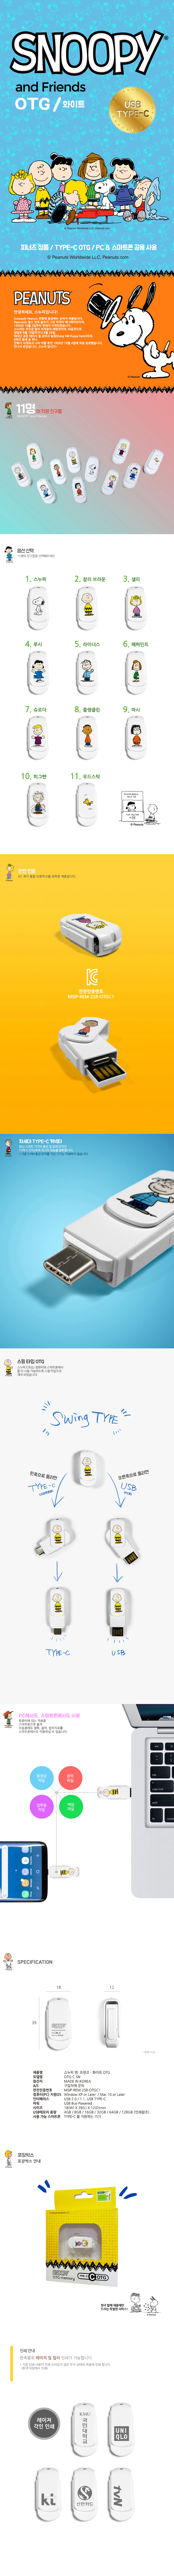 스누피 USB-C OTG 4G C-SN 8,000원 - 캠브리트 디지털, PC저장장치, USB, 캐릭터/디자인 바보사랑 스누피 USB-C OTG 4G C-SN 8,000원 - 캠브리트 디지털, PC저장장치, USB, 캐릭터/디자인 바보사랑